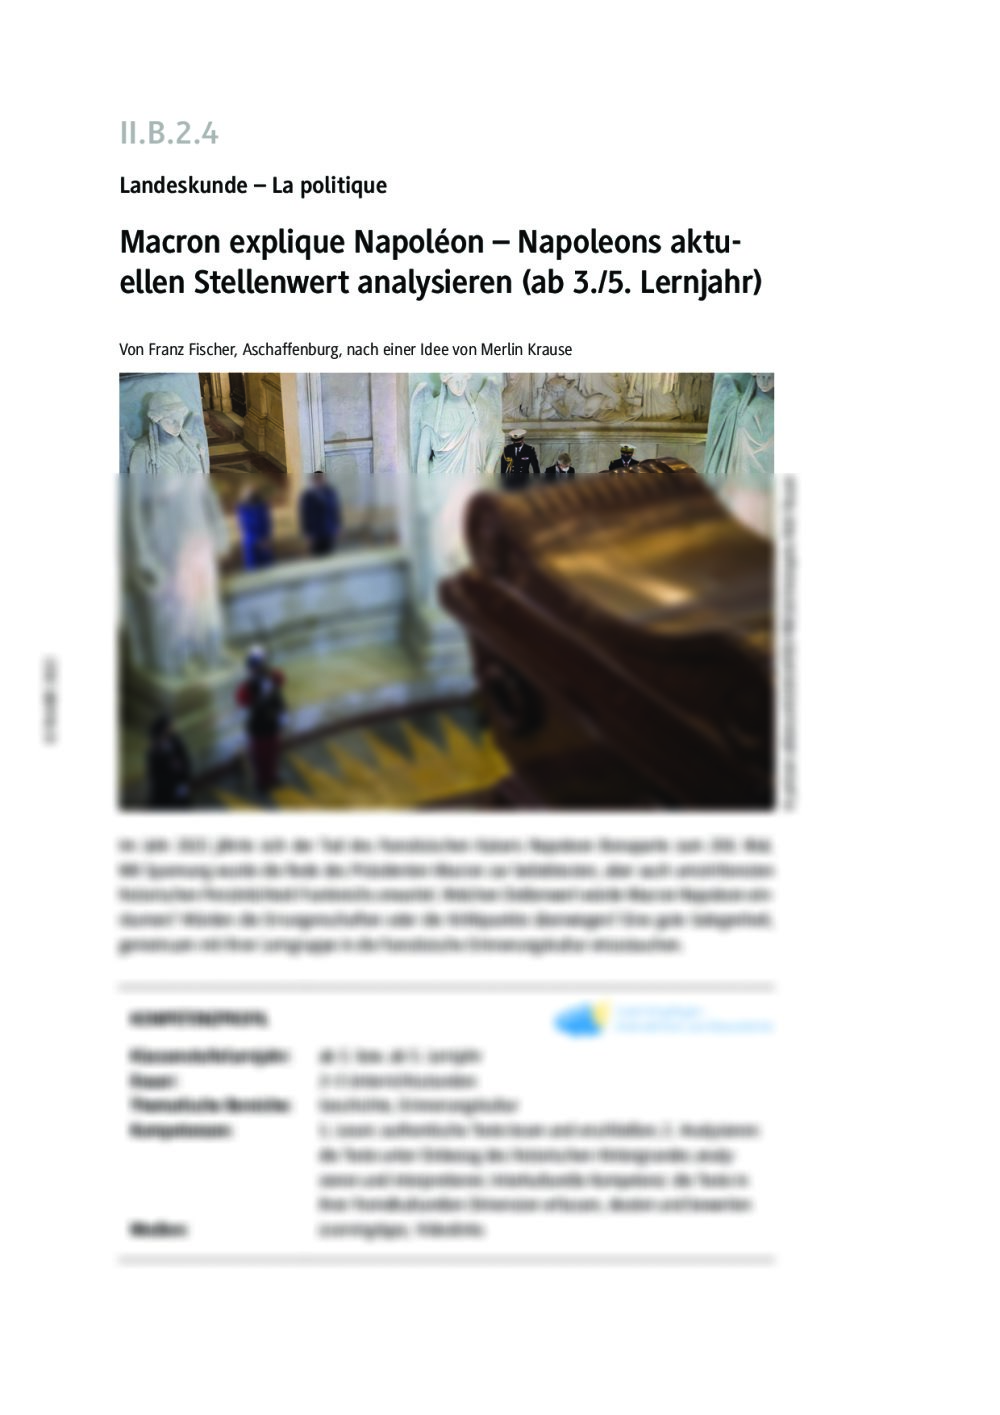 Macron explique Napoléon - Seite 1